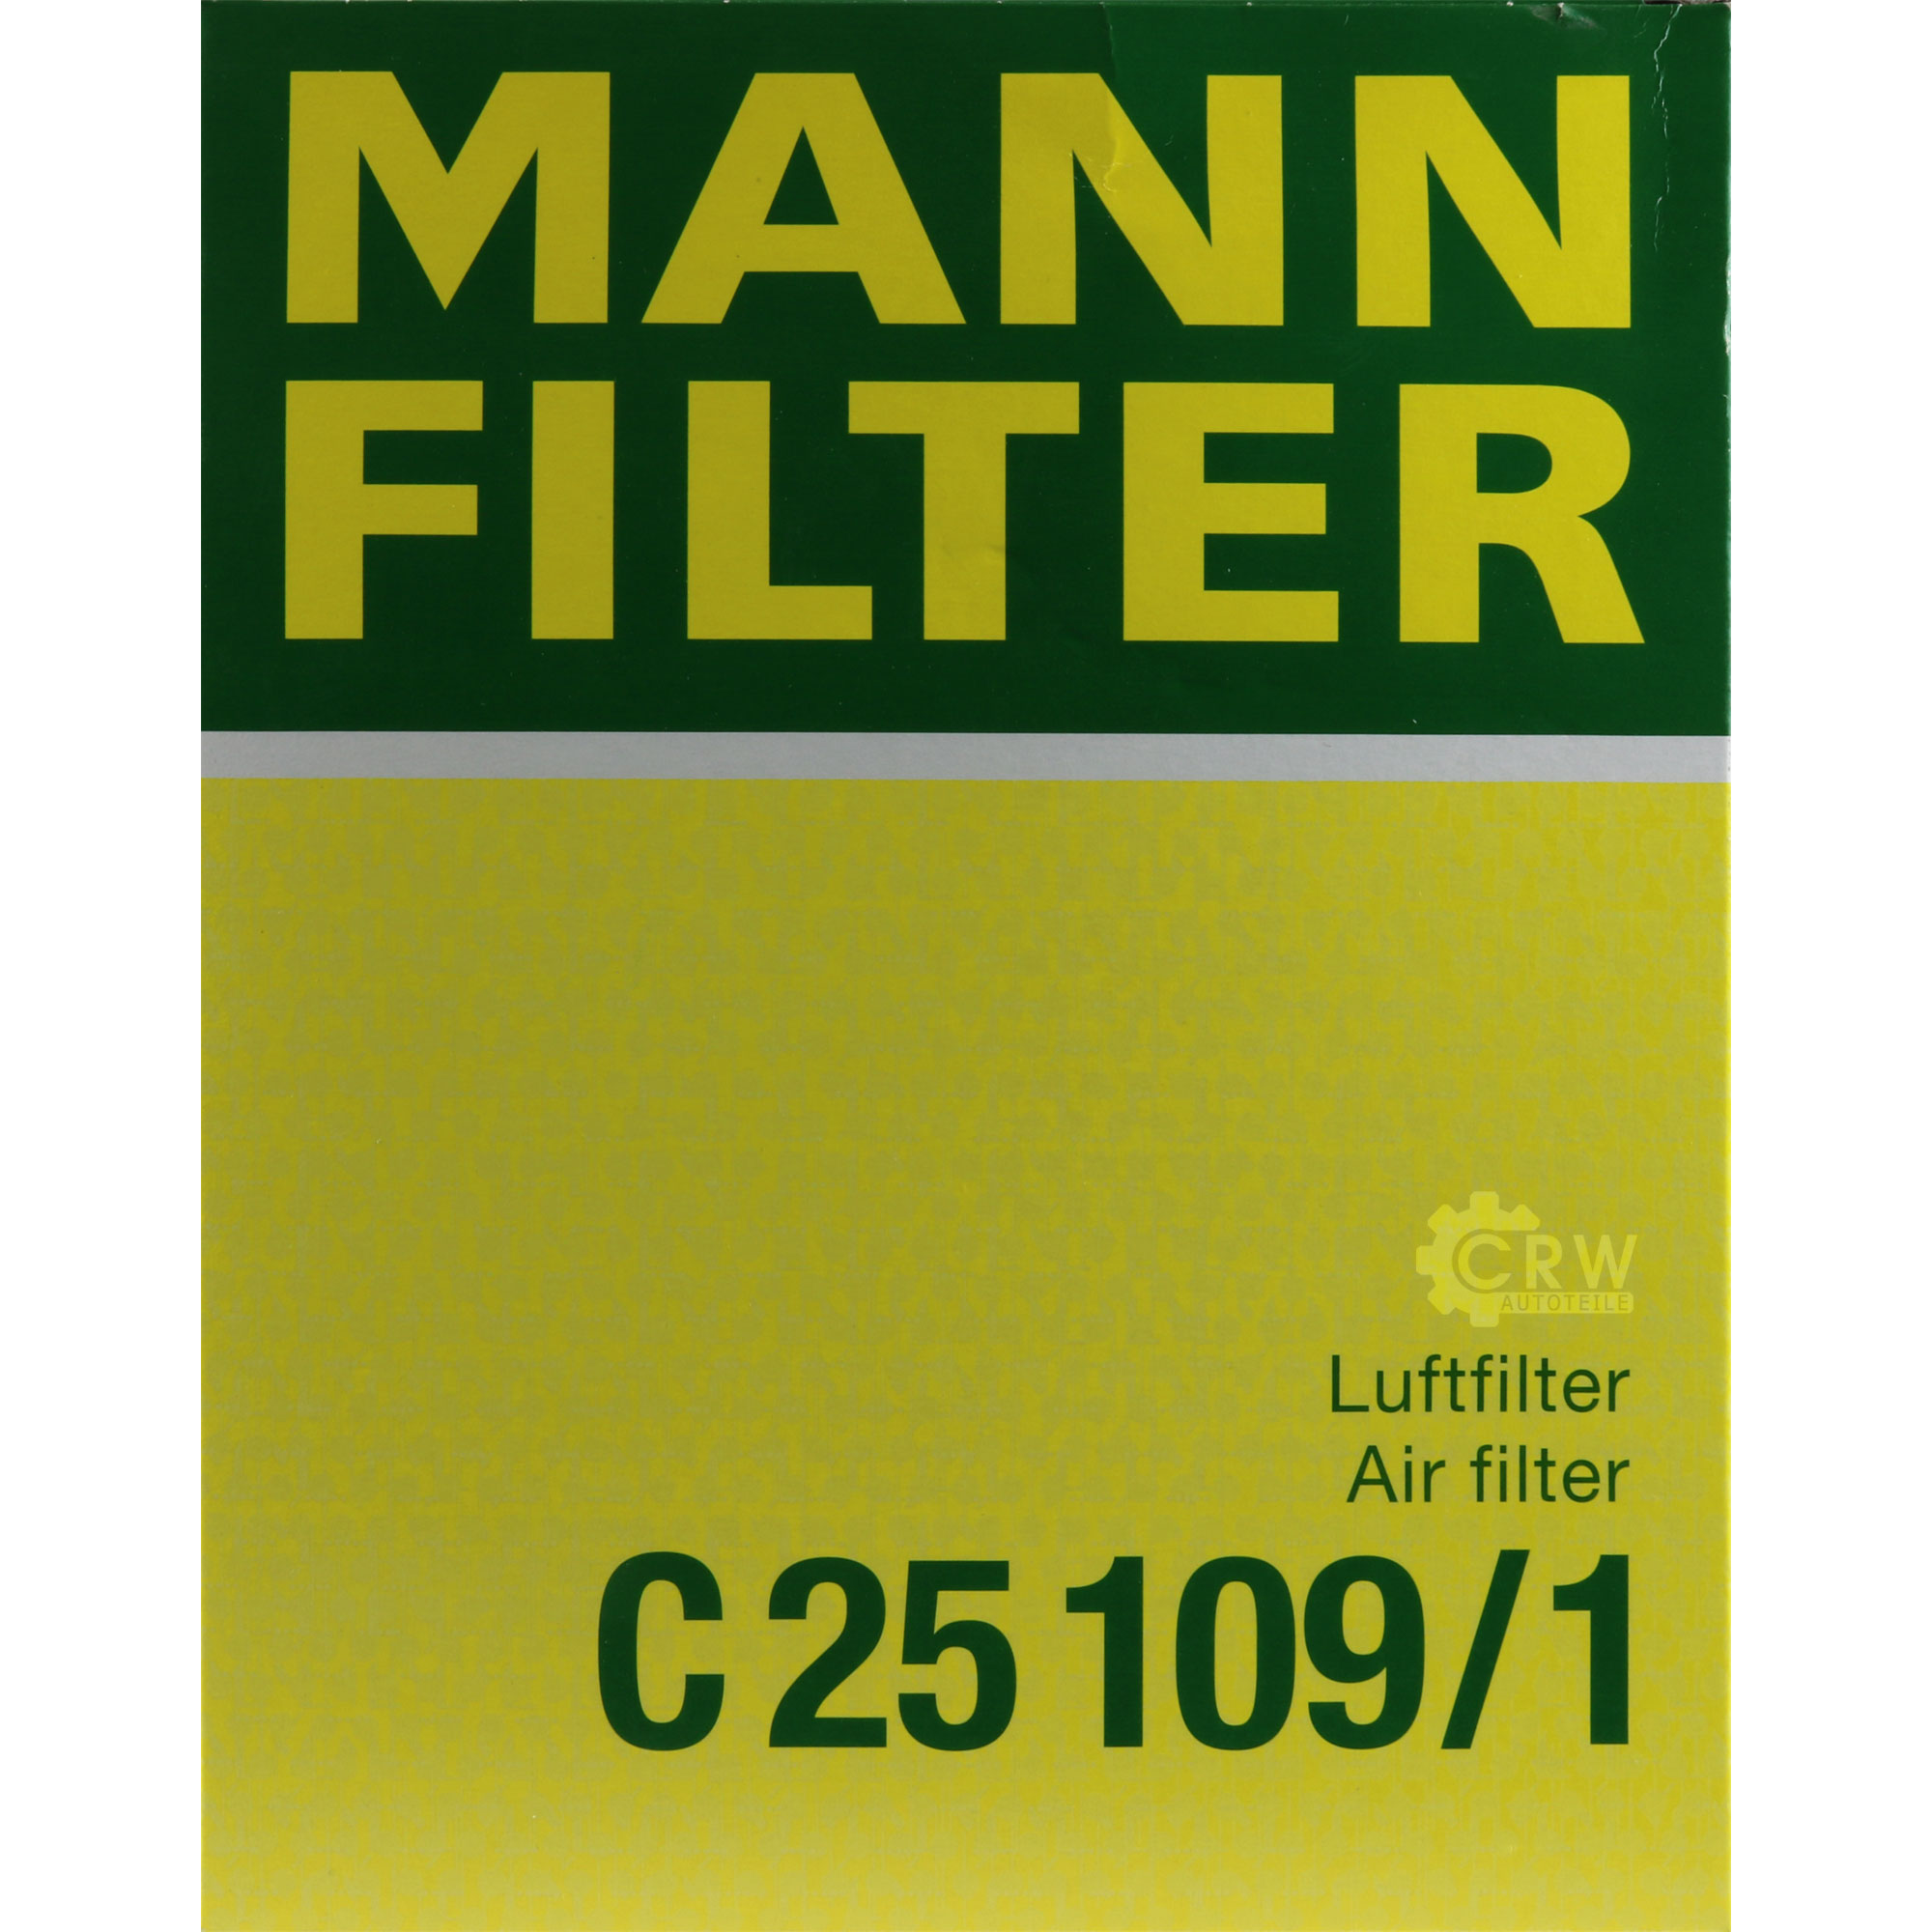 MANN-FILTER Luftfilter für Renault Laguna III Grandtour KT0/1 2.0 dCi 1.5 DT0/1